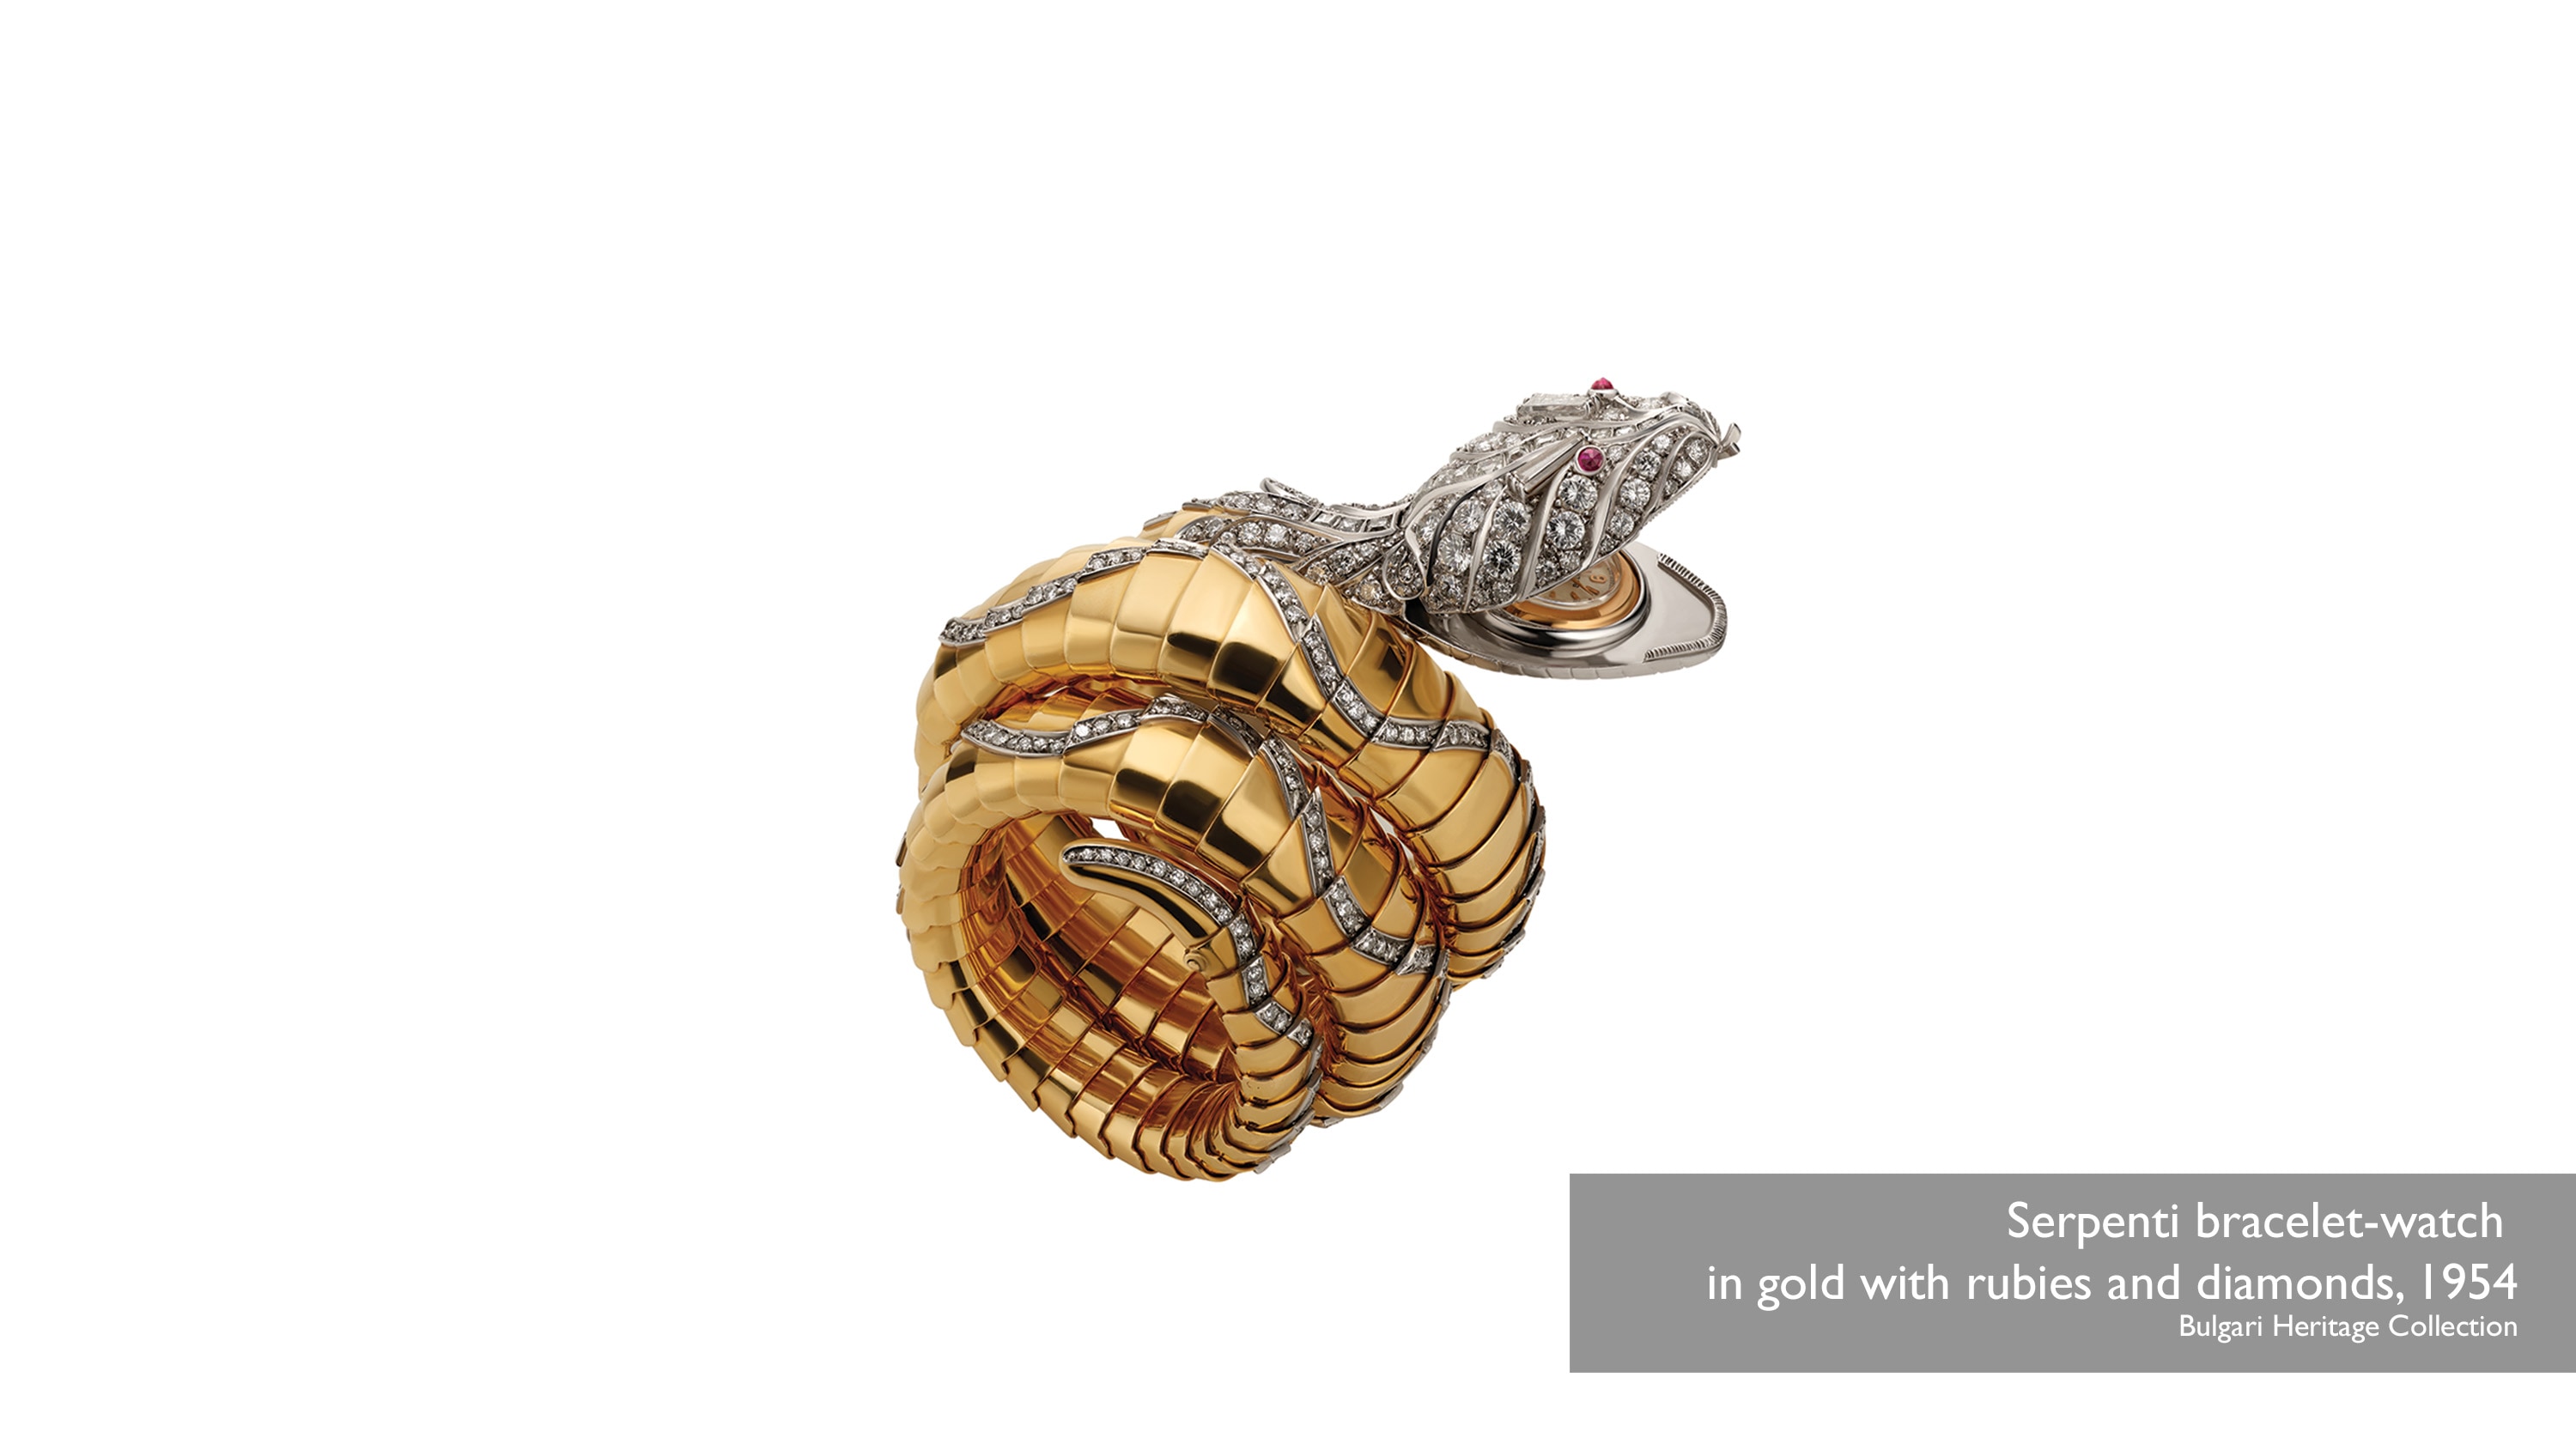 Gelang rantai emas Serpenti bertahtakan batu mirah delima dan berlian, Bulgari Heritage Collection 1954